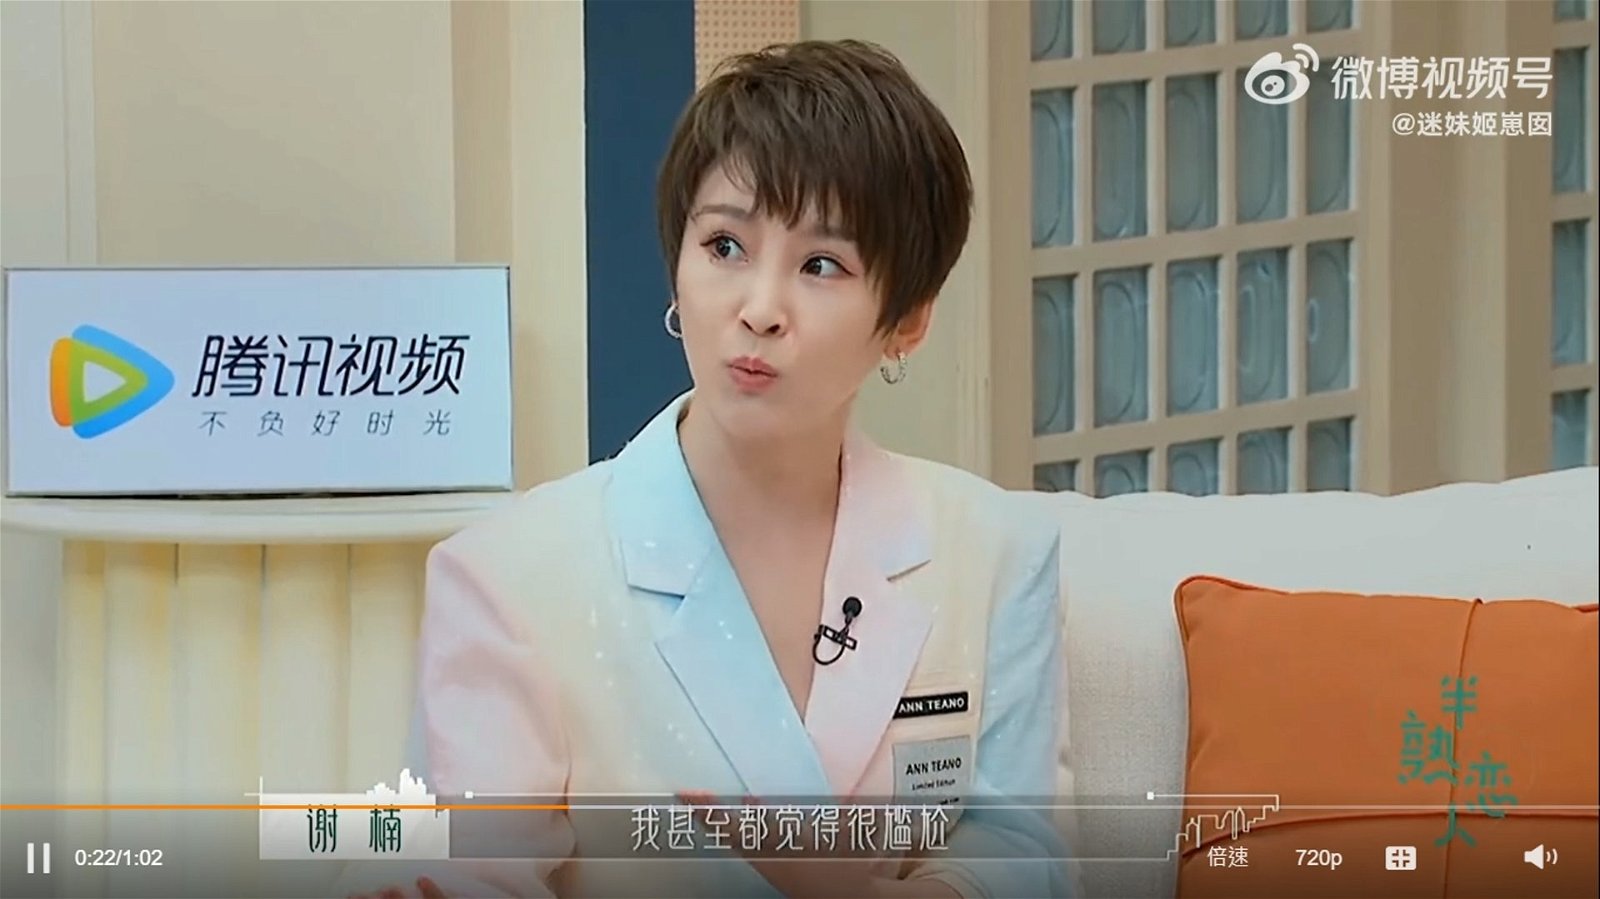 谢楠在节目中爆出老公吴京为她做过的浪漫小事。